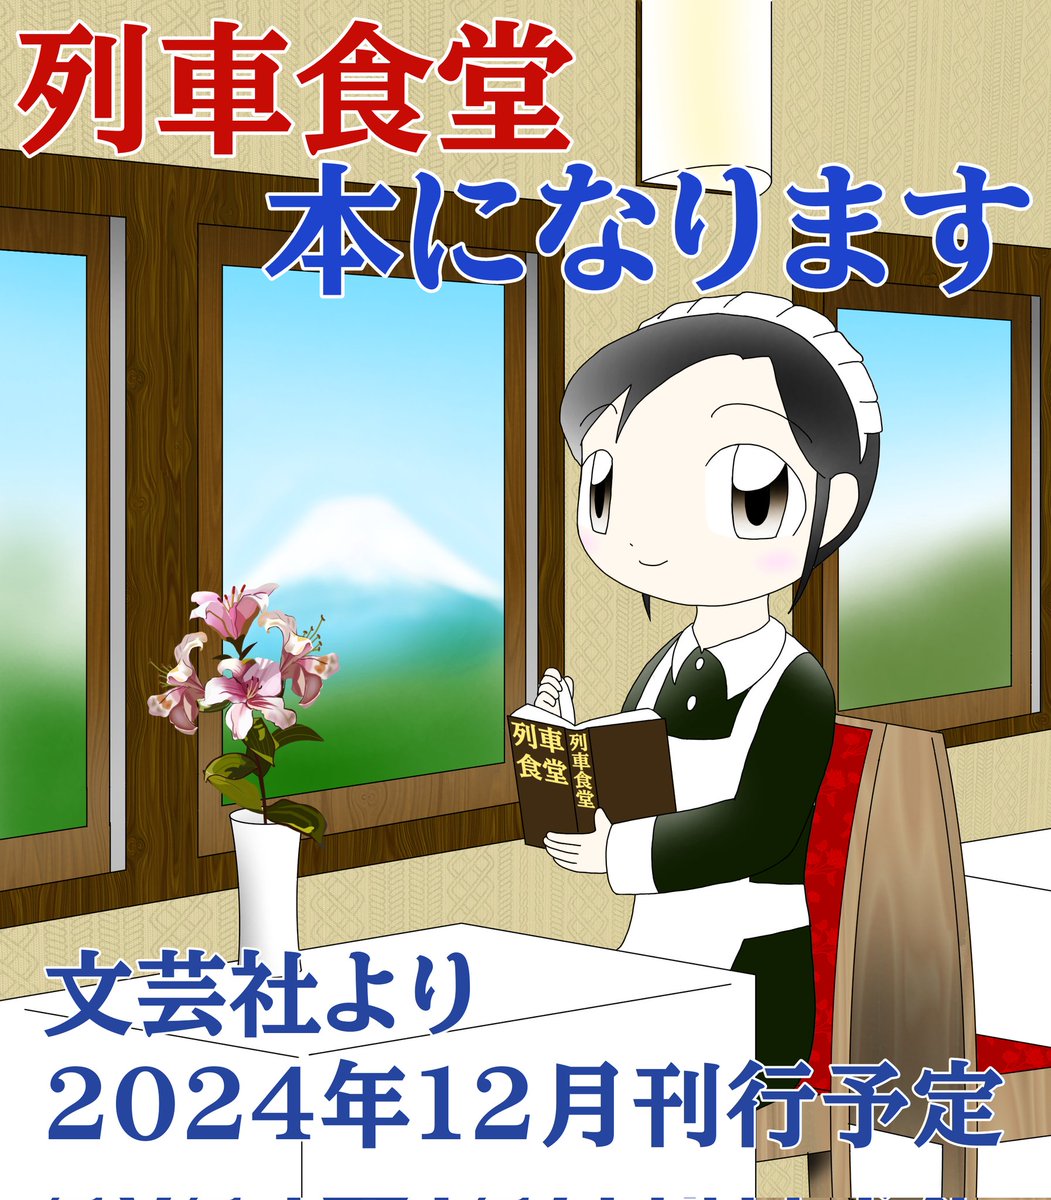 『列車食堂』書籍化が決定しました。
文芸社から出版で、現在は2024年12月を目指して編集作業中です。
拙作を応援して下さった皆様のお陰です、ありがとうございます。

#カクヨム 版
kakuyomu.jp/works/16816700…
#アルファポリス 版
alphapolis.co.jp/novel/70122410…
#ステキブンゲイ 版
sutekibungei.com/novels/30a0d1e…